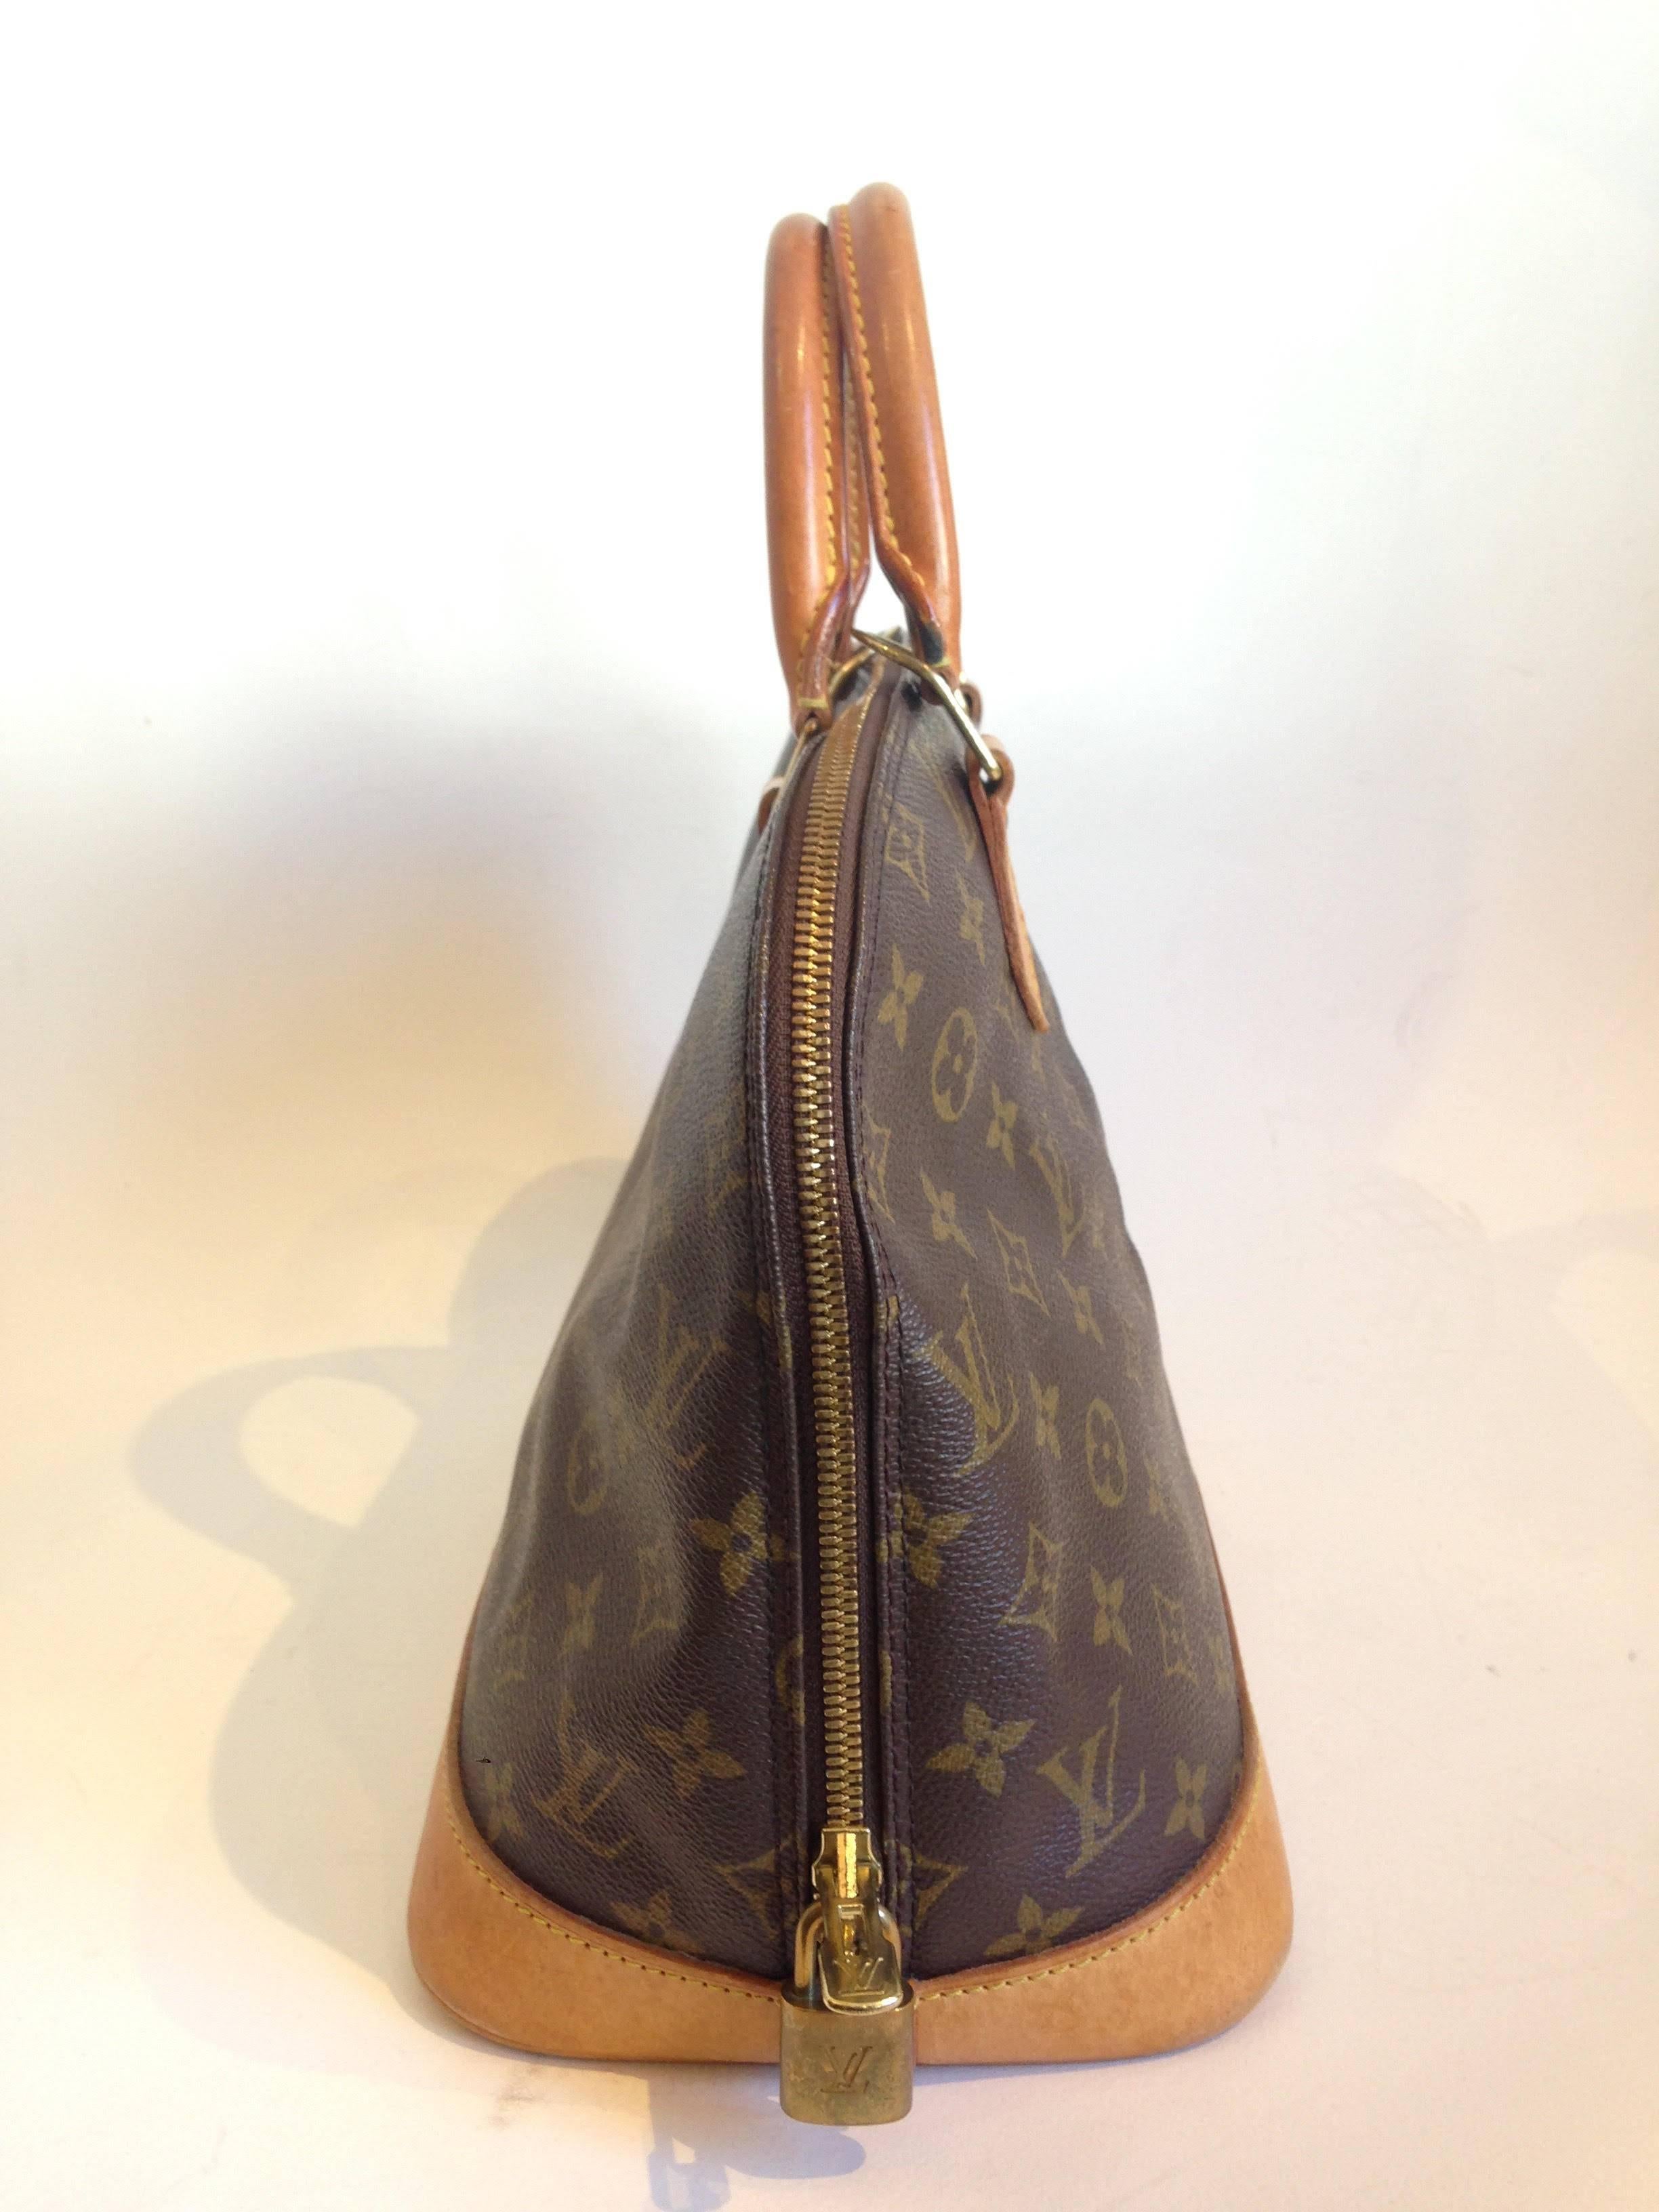 Louis Vuitton Monogram Alma Handbag with good condition. 